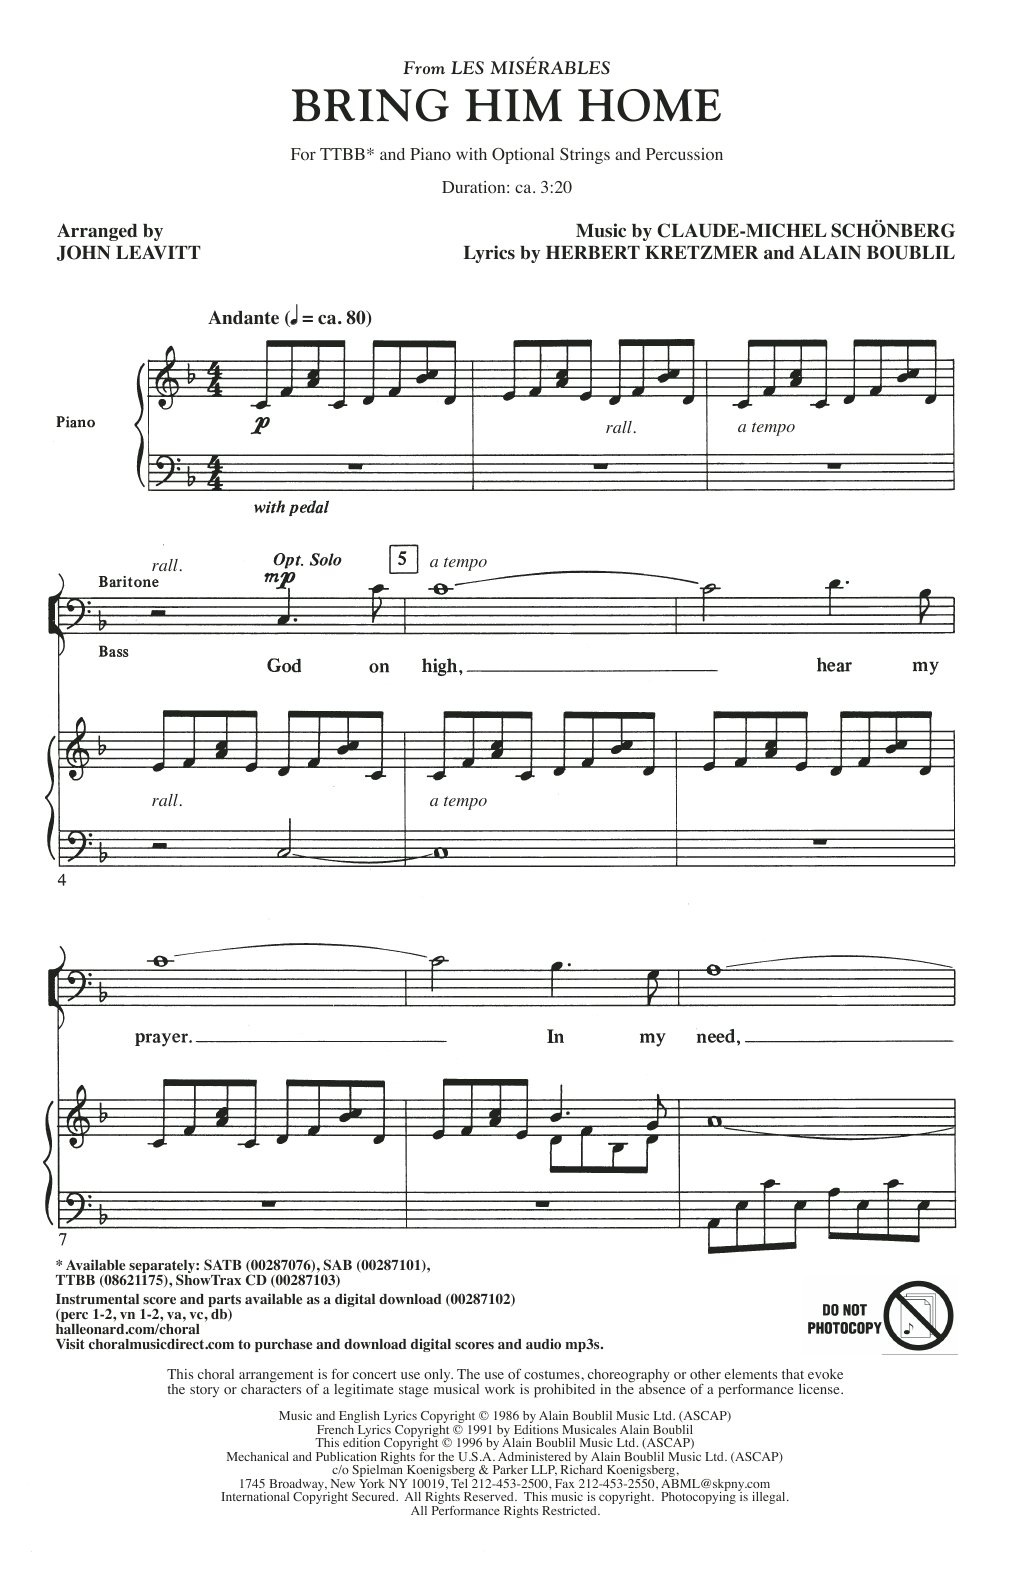 Boublil & Schonberg Bring Him Home (from Les Miserables) (arr. John Leavitt) Sheet Music Notes & Chords for TTBB Choir - Download or Print PDF